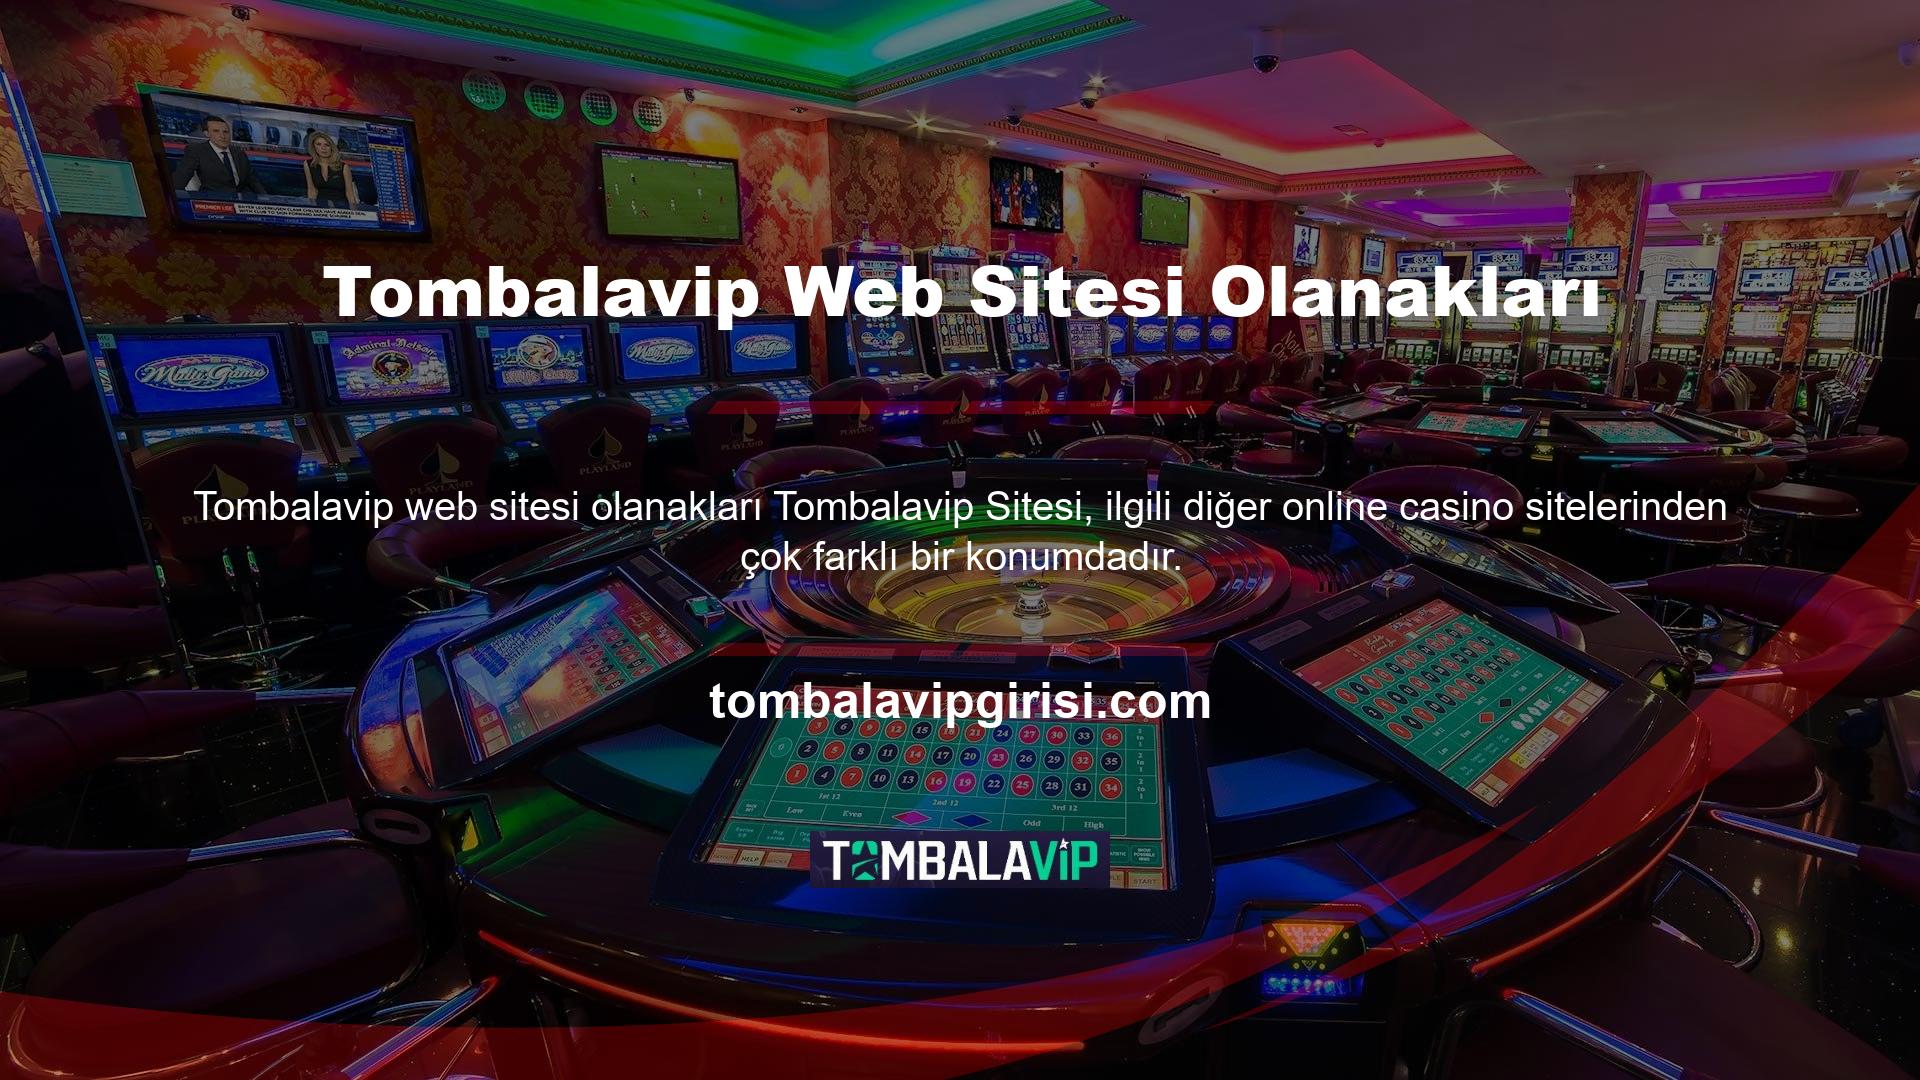 Tombalavip sitesi, yabancı menşeli ve mülkiyeti nedeniyle TİB tarafından yasa dışı casino sitesi olarak sınıflandırılmaktadır